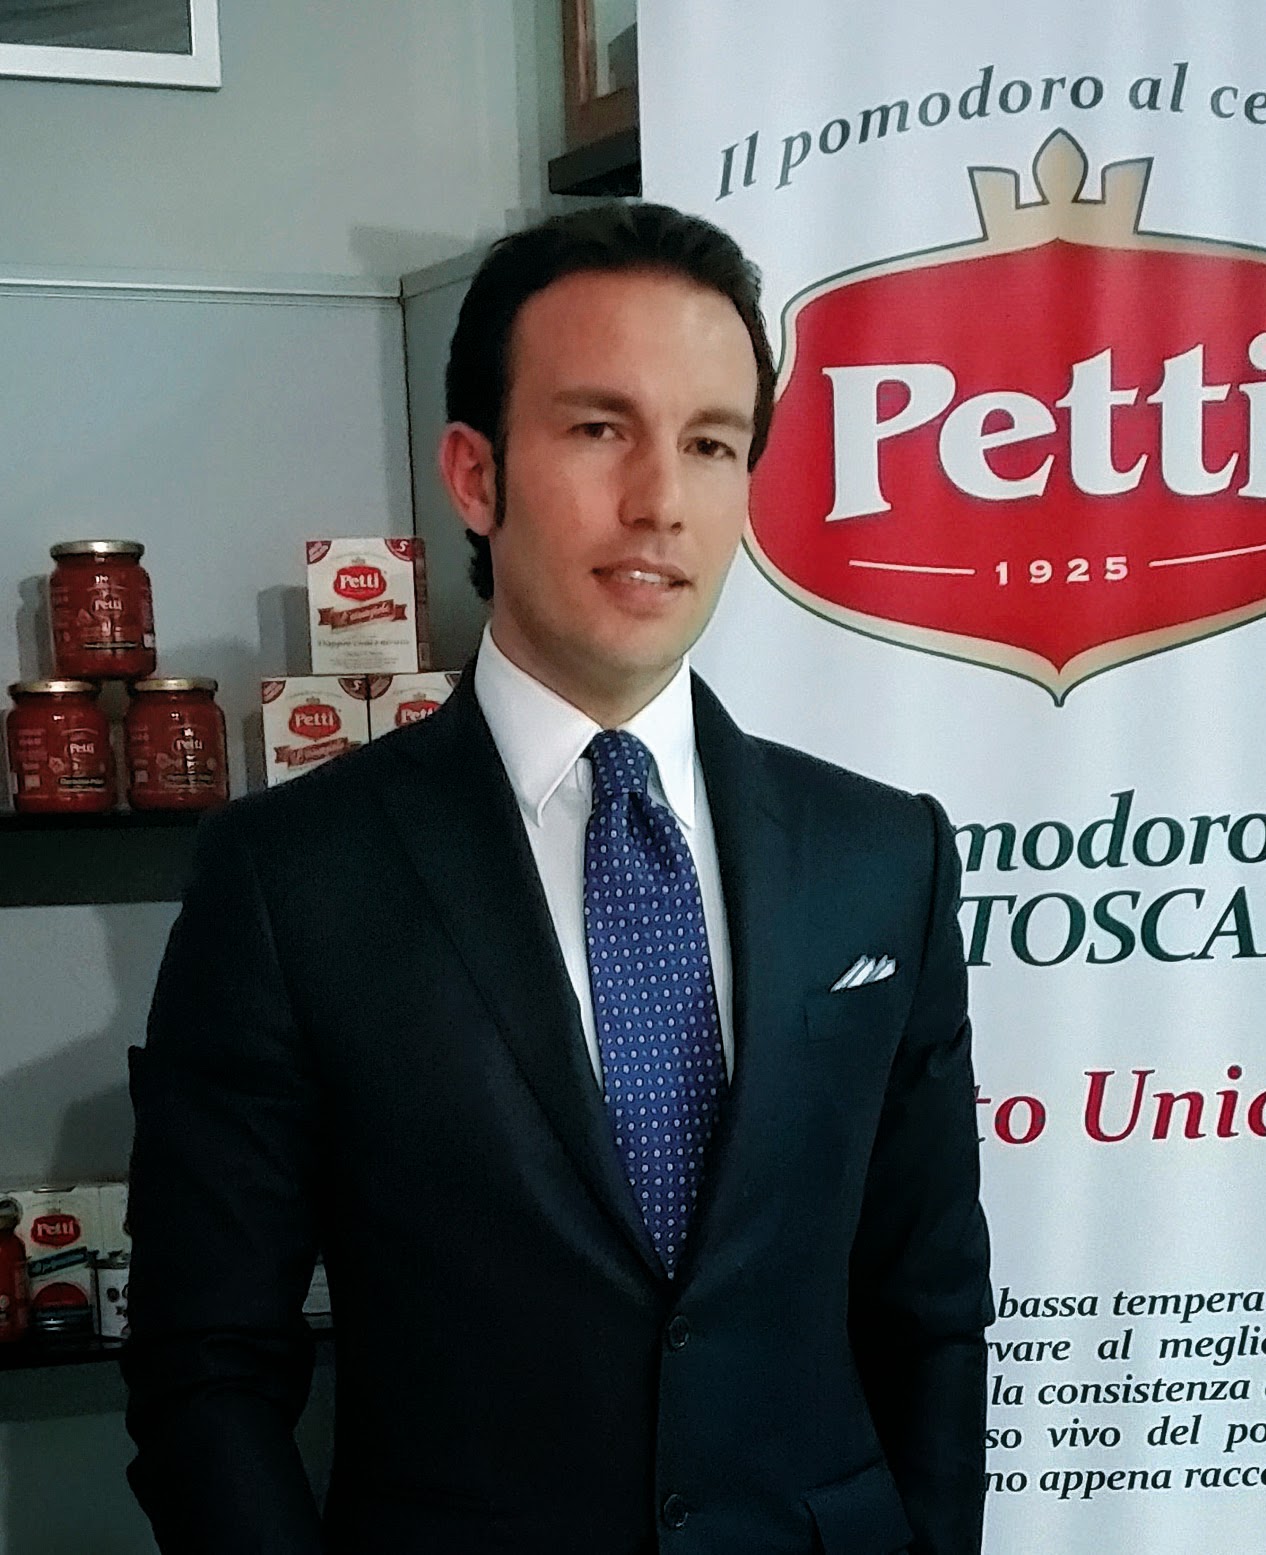 Pasquale Petti